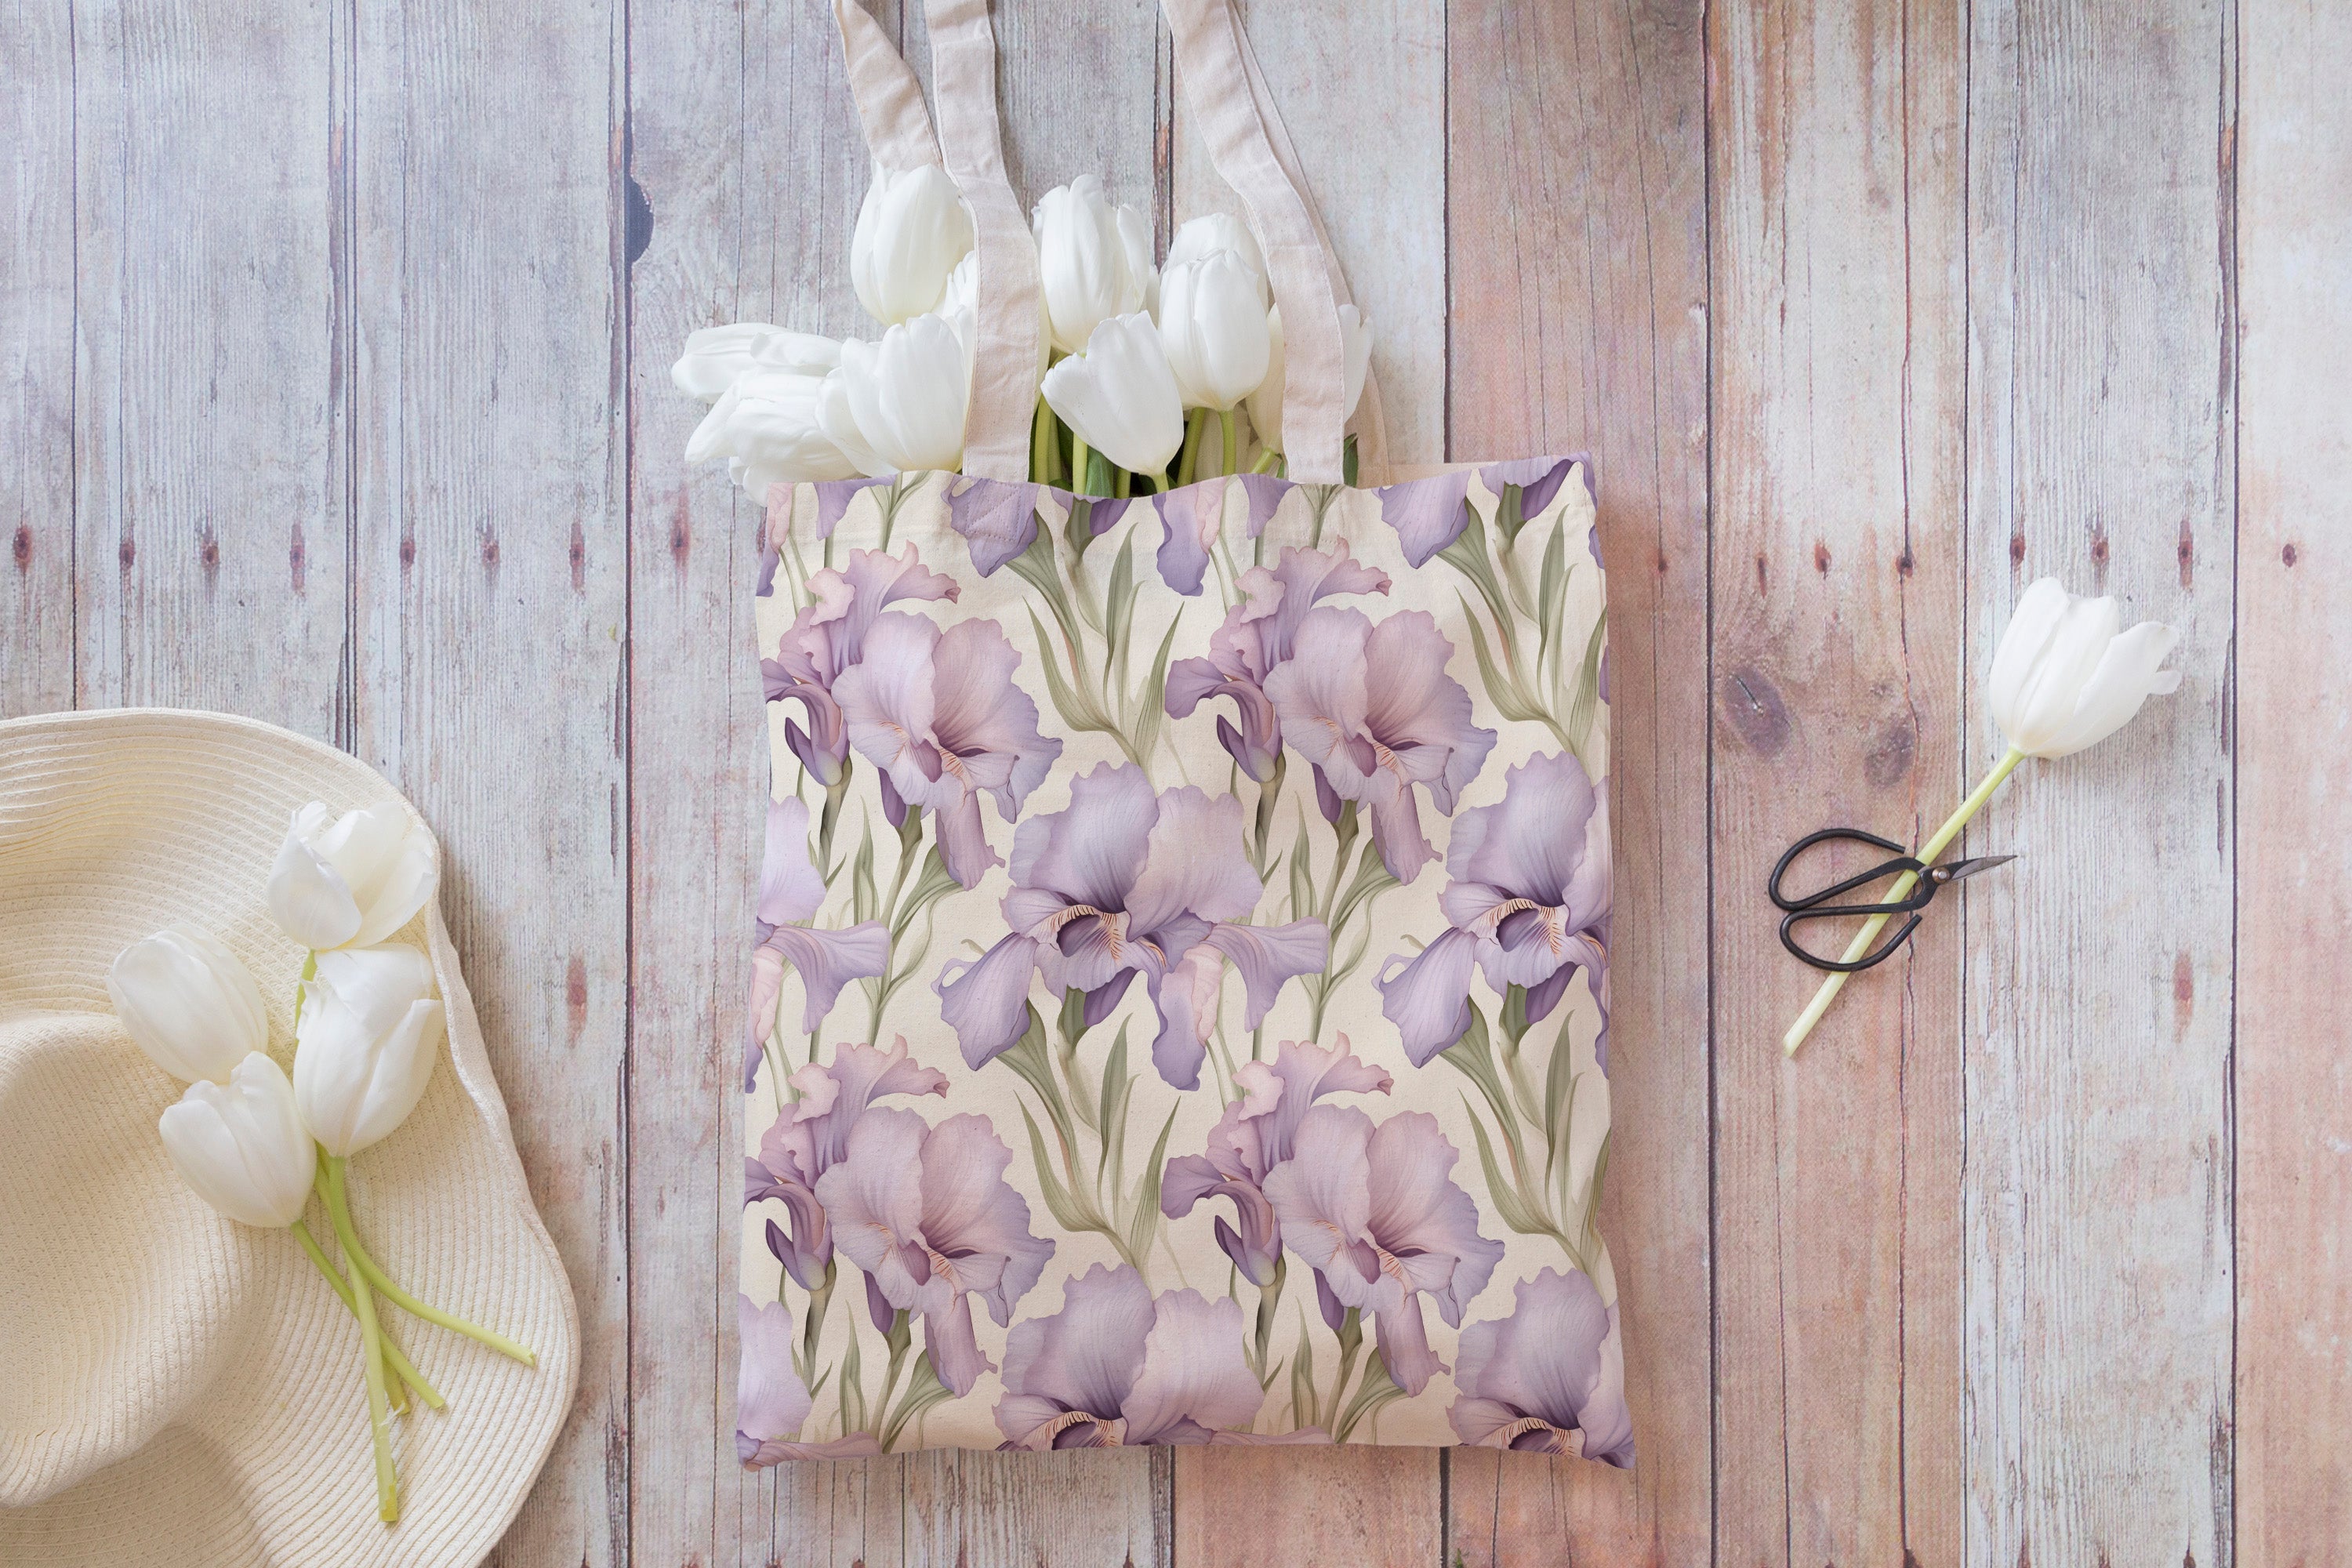 16 Seamless Watercolor Purple Iris Flowers Digital Papers